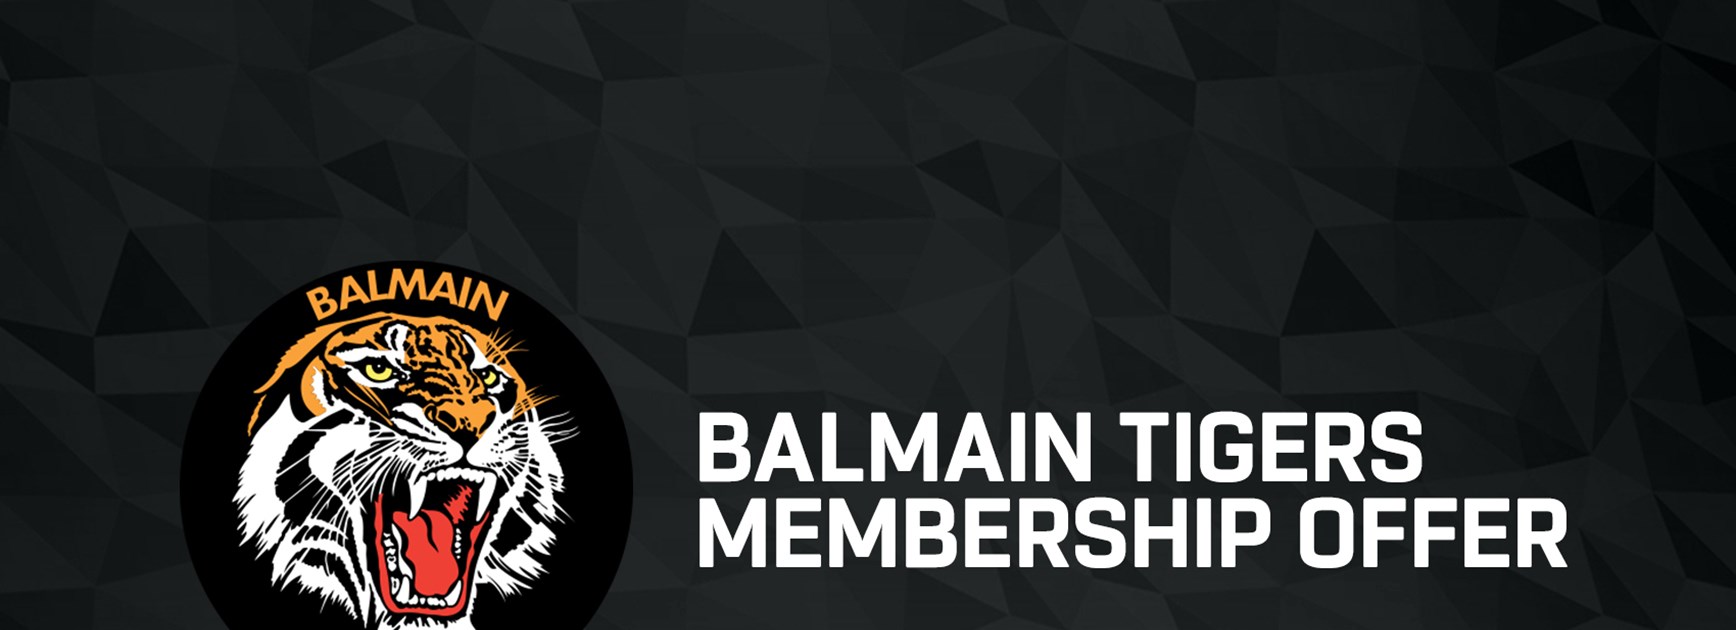 Balmain Tigers Leagues Club Membership offer